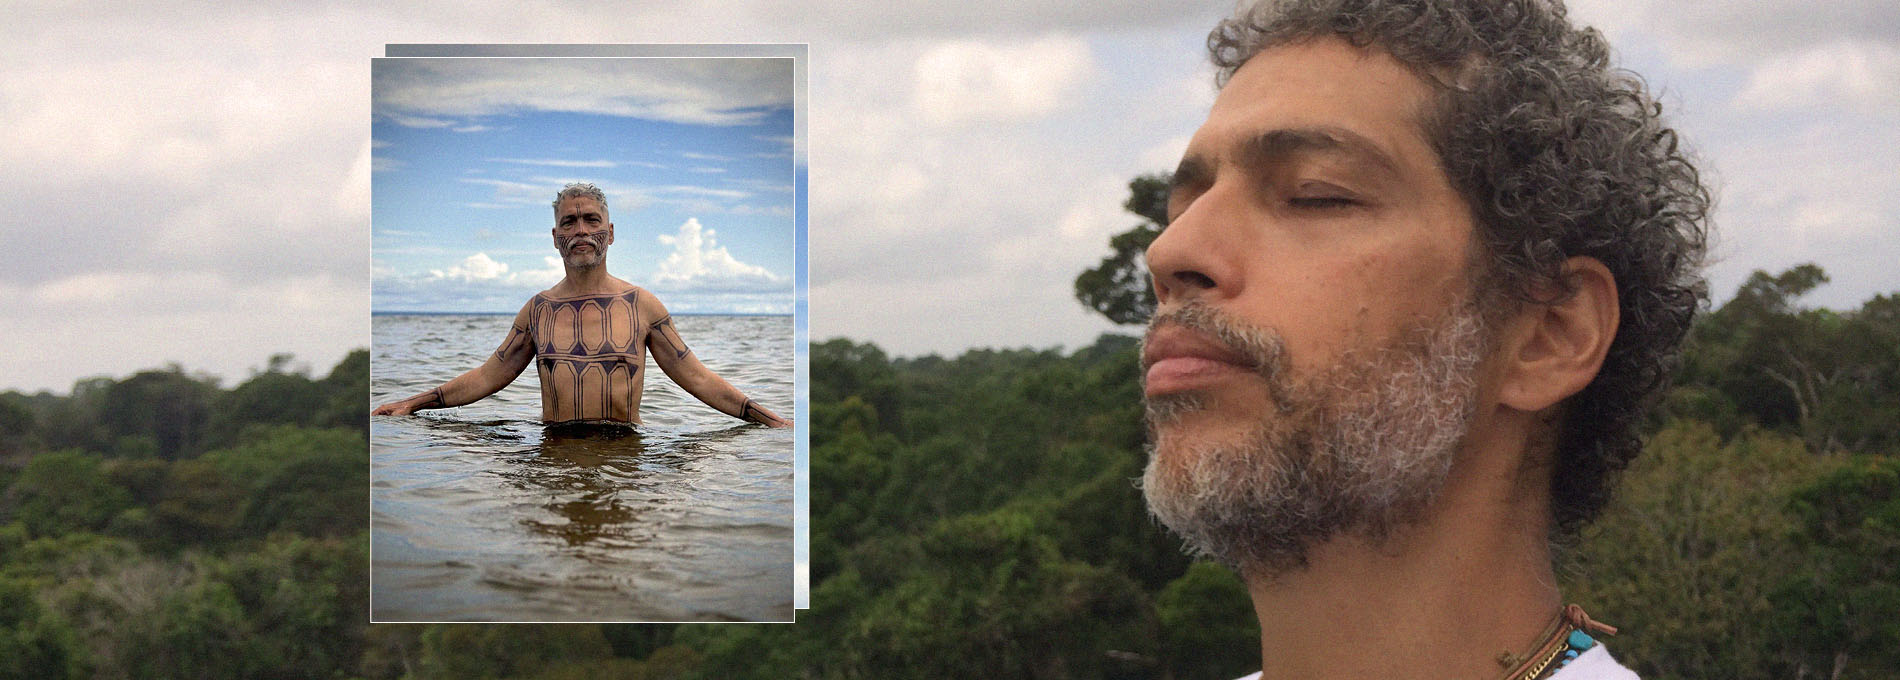 Estevão Ciavatta de olhos fechados suspirando em frente a floresta, no Tapajós. E dentro de um rio com o corpo pintado de motivos indígenas